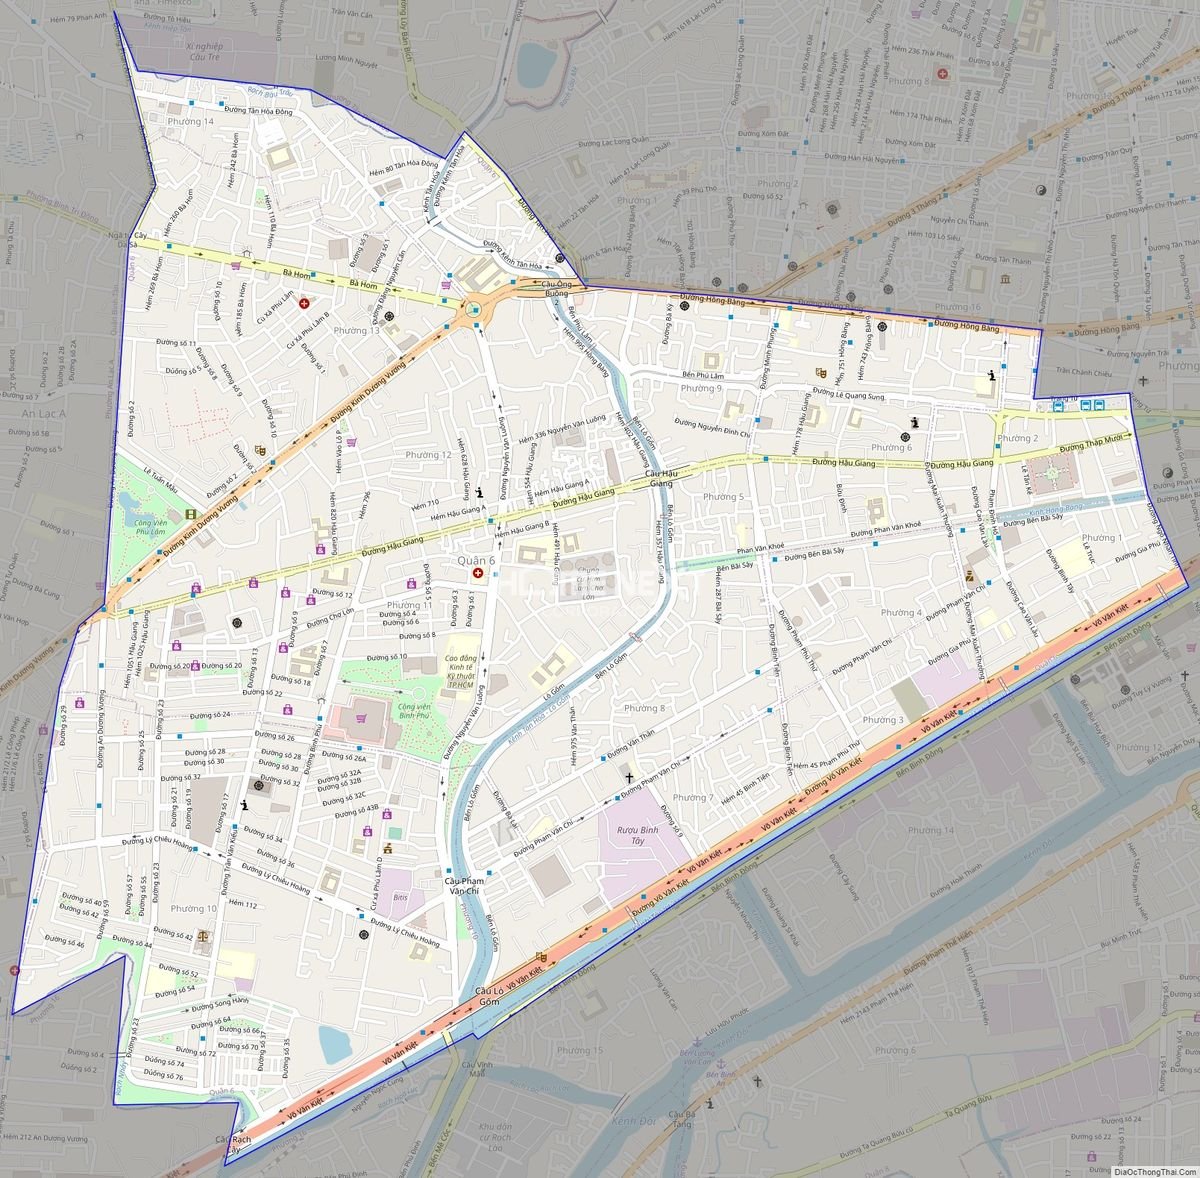 Thông tin mới nhất về Bản đồ quận 6 TPHCM: từ bây giờ, bạn có thể theo dõi và khám phá bản đồ trực tuyến để dễ dàng tìm kiếm thông tin về địa điểm và tiện ích.